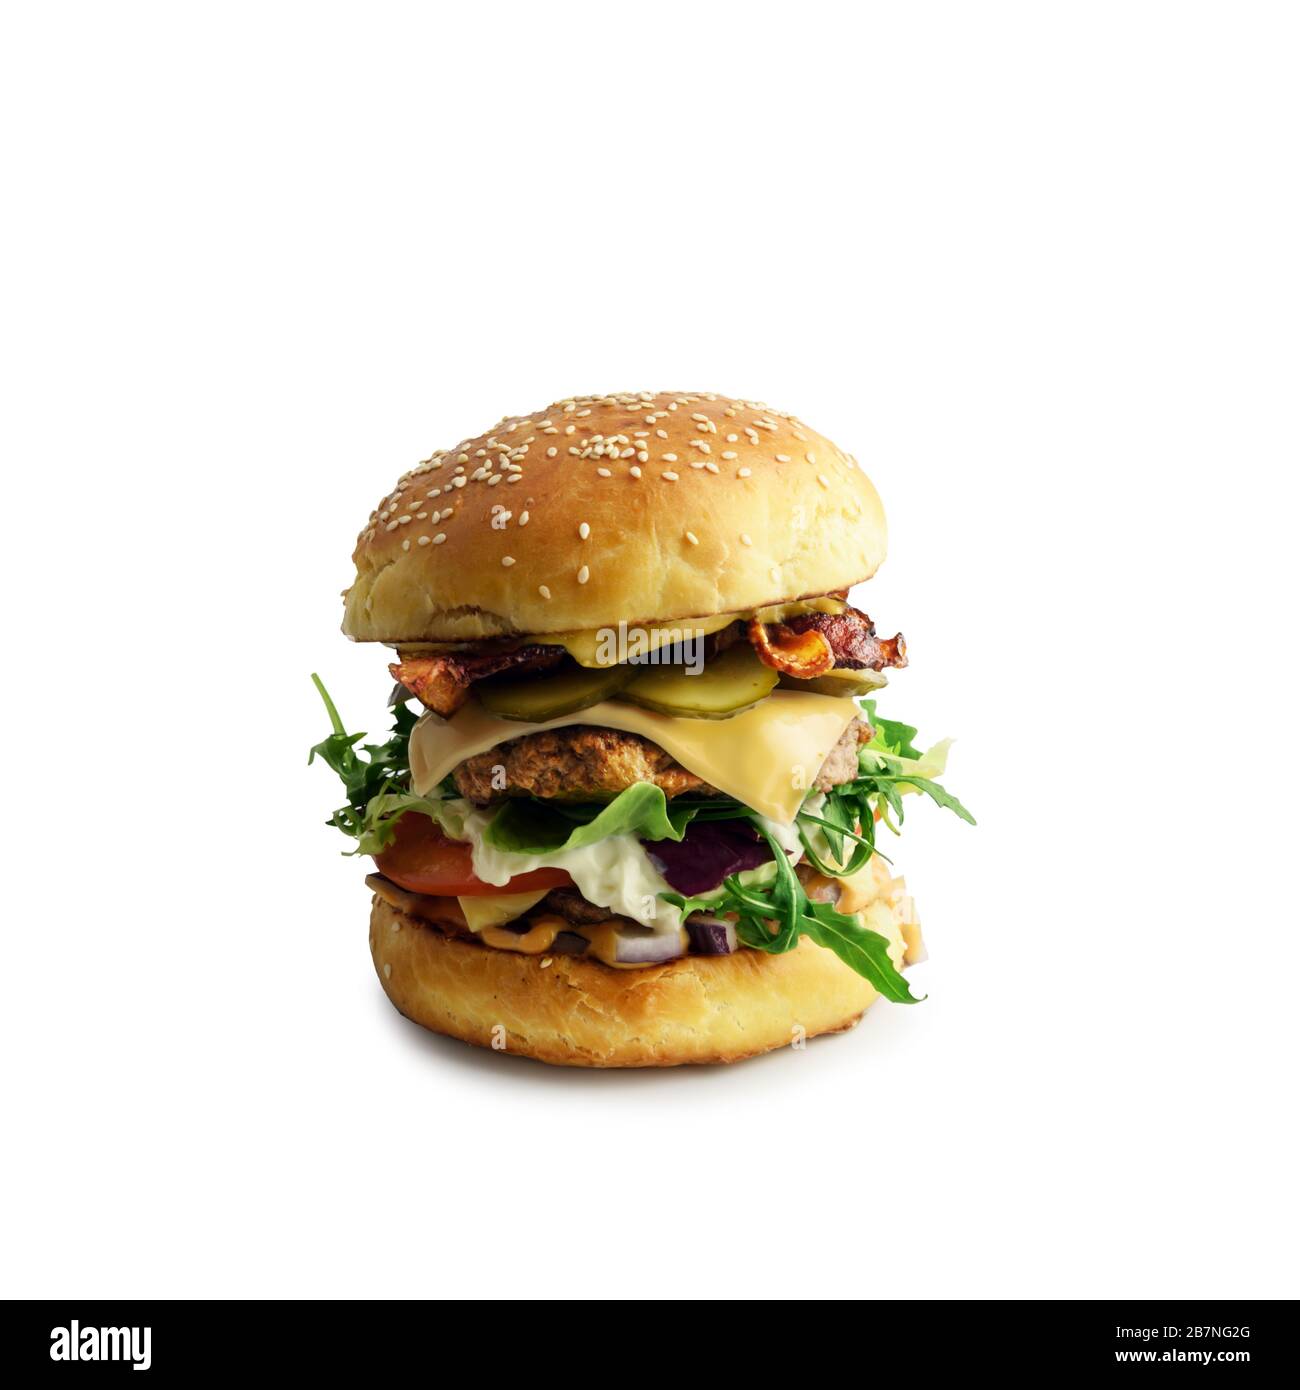 Appetitoso cheeseburger su piatto isolato su bianco. Fotografia di cibo Foto Stock